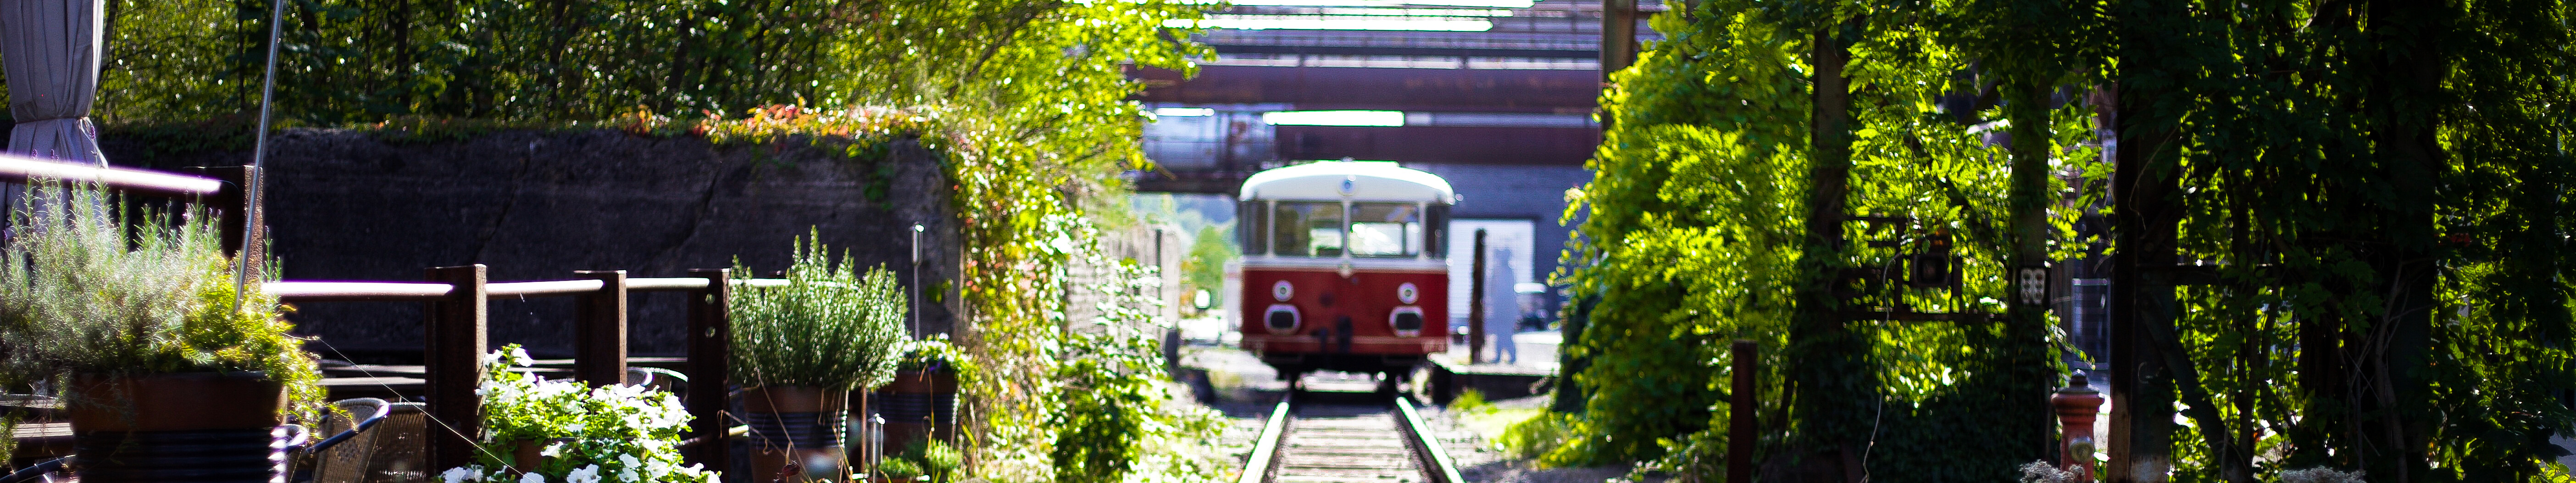 Ein alter Eisenbahnwaggon fährt auf den Gleisen durch die begrünte Außenanlage des LWL-Industriemuseums Henrichshütte in Hattingen. 